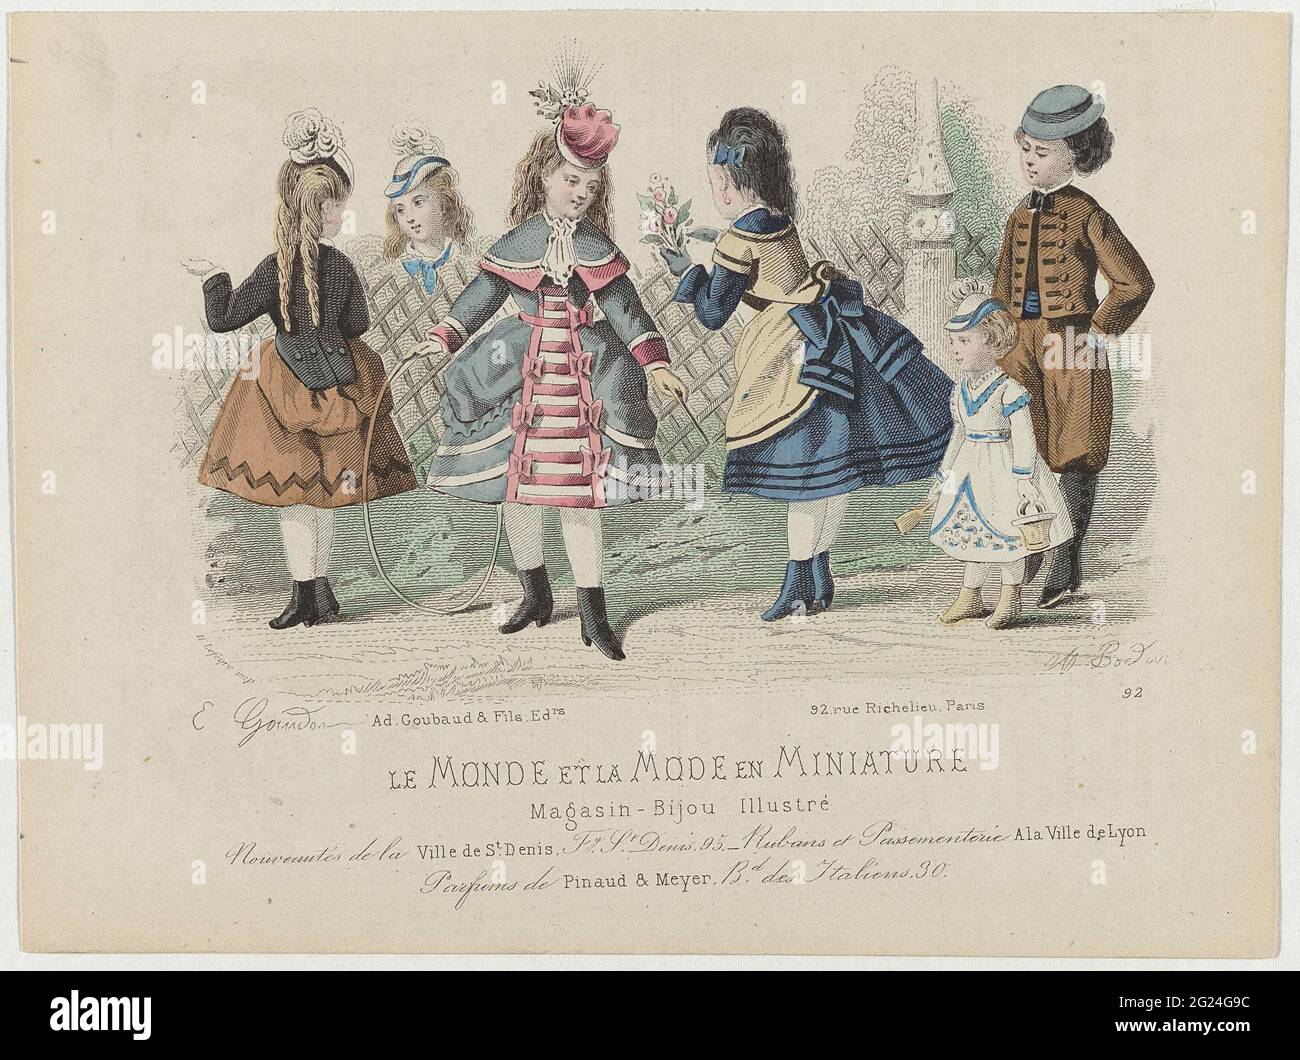 Le Monde Et La Fashion And Miniature 1873 No 92 Nouvautes De La Ville De St Denis Six Children Play Outside The Girls Are Dressed In Dresses With Tournure And A